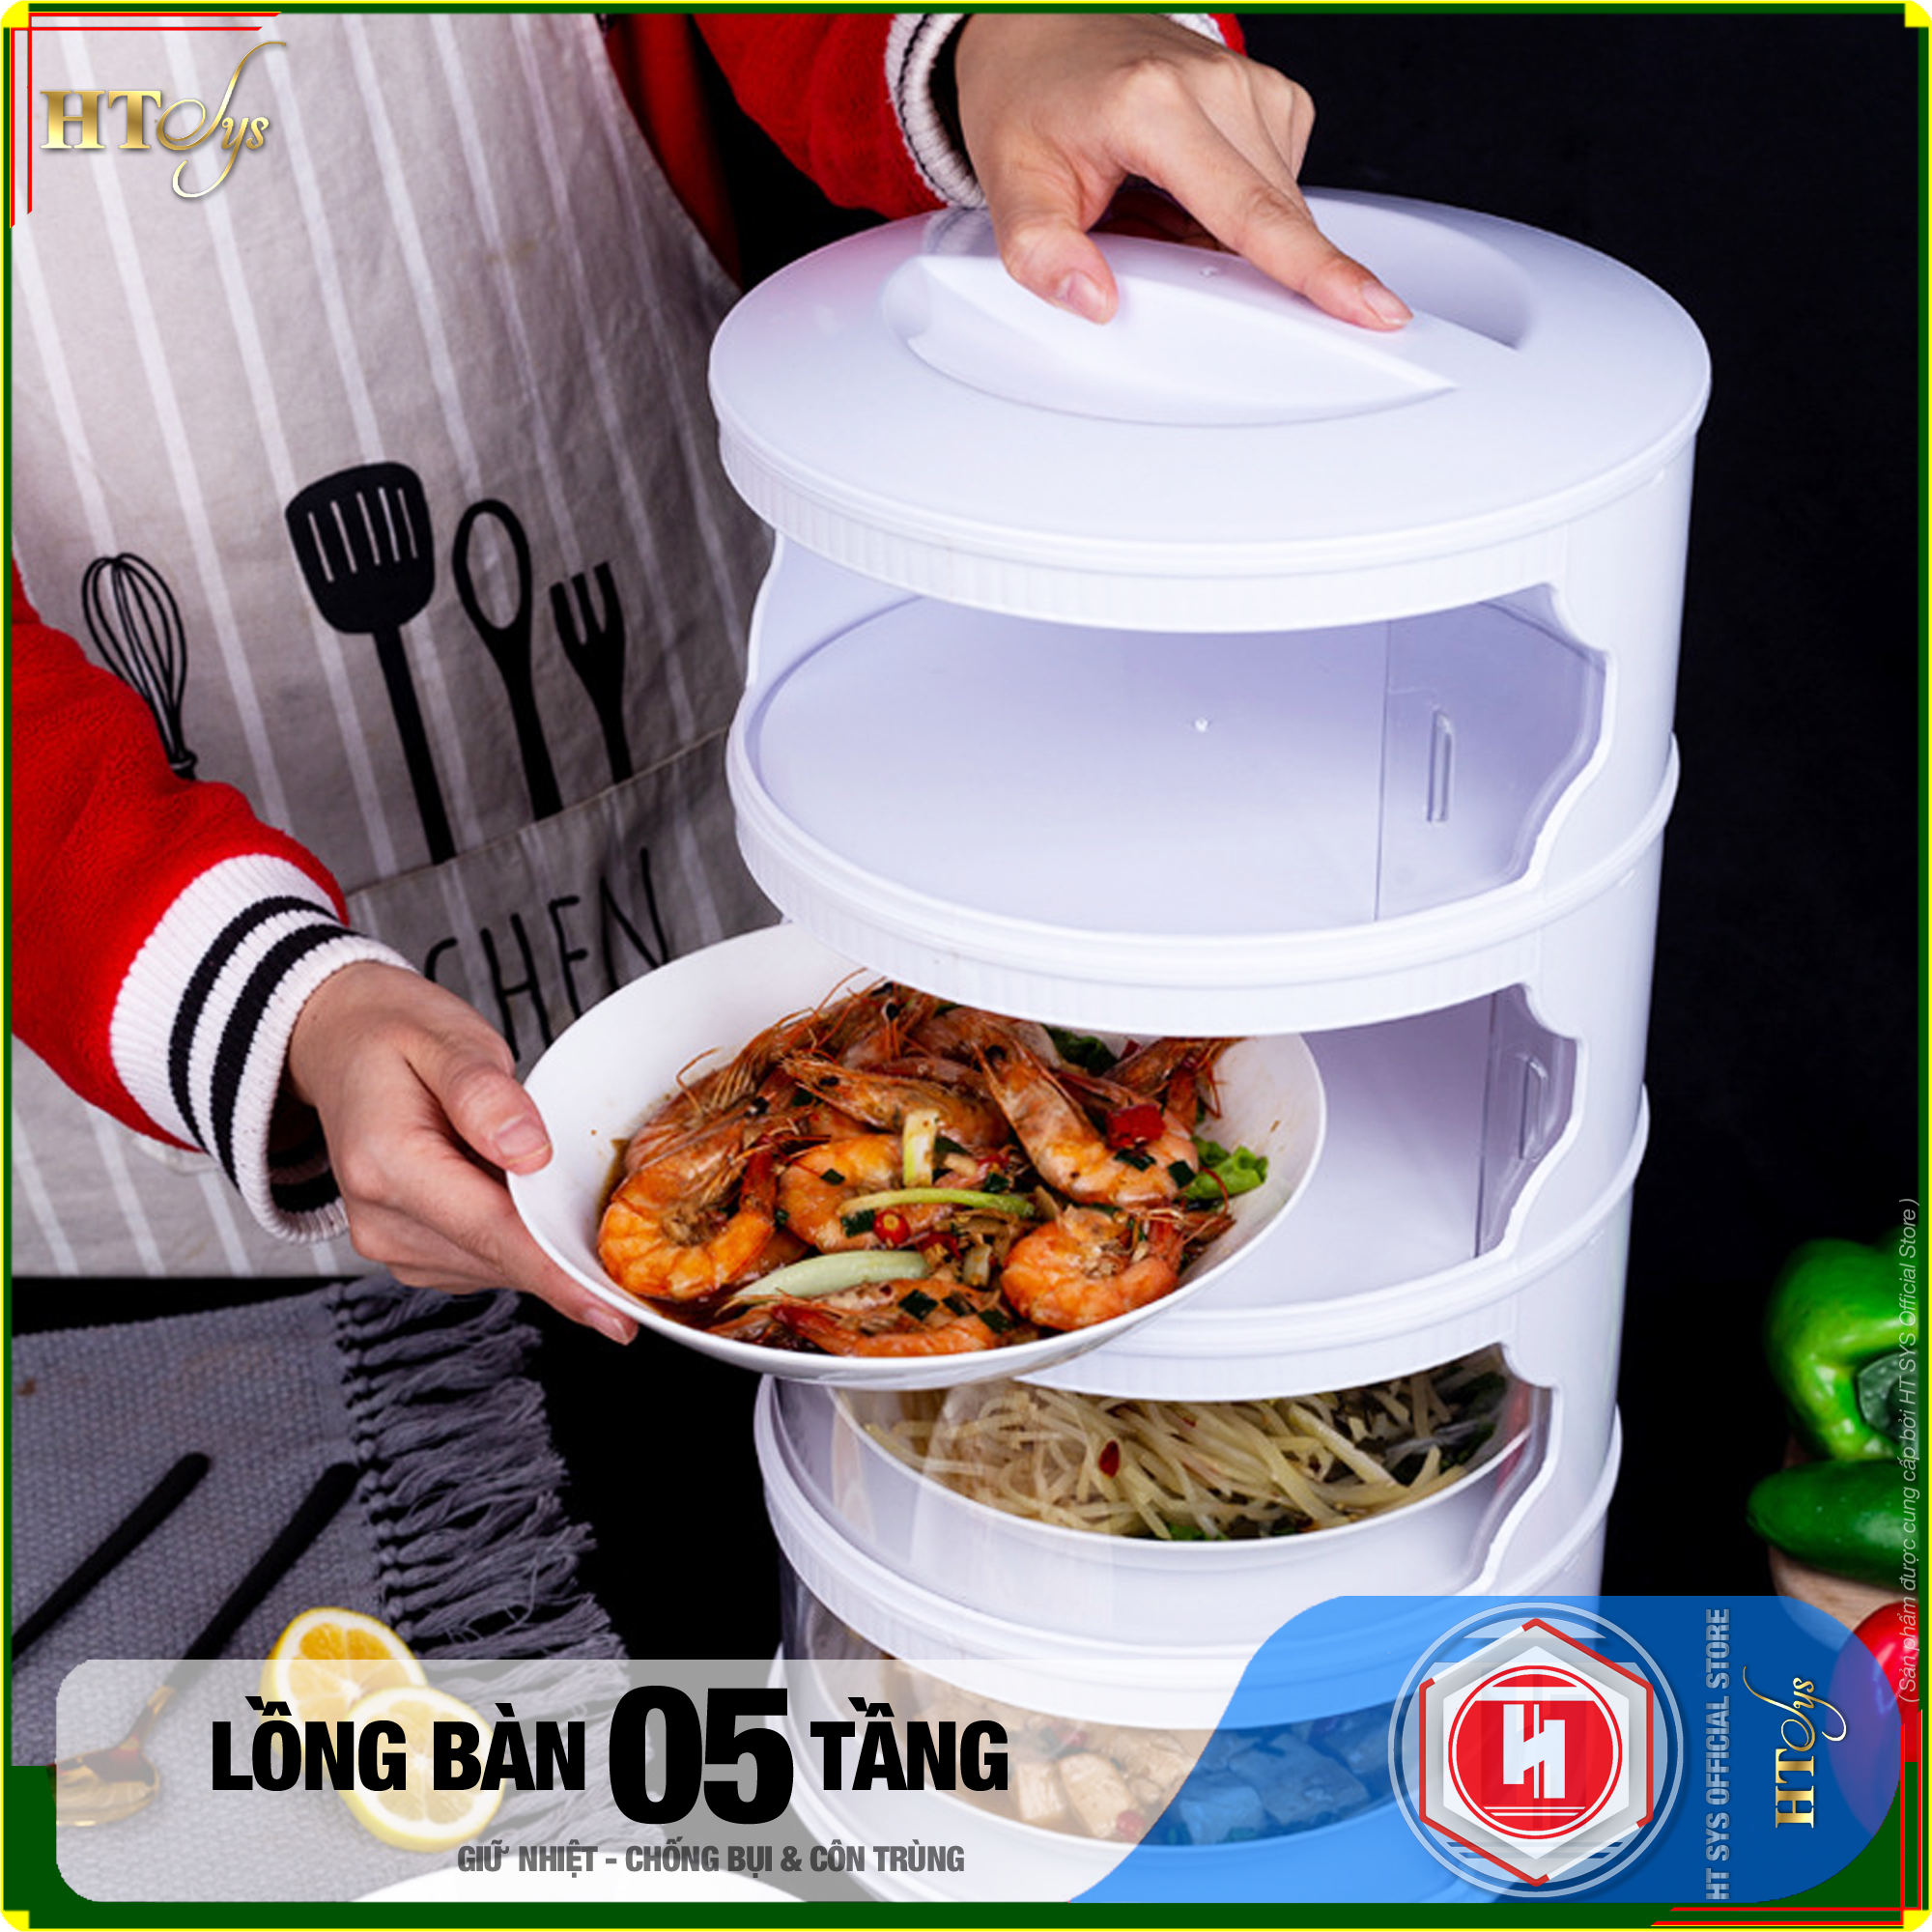 Lồng bàn giữ nhiệt đậy thức ăn 5 tầng HT SYS - Khay hộp đậy thức ăn - Giữ nhiệt - Chống bụi - Chống côn trùng - Chất liệu ABS+PET Cao Cấp - Hàng Nhập Khẩu